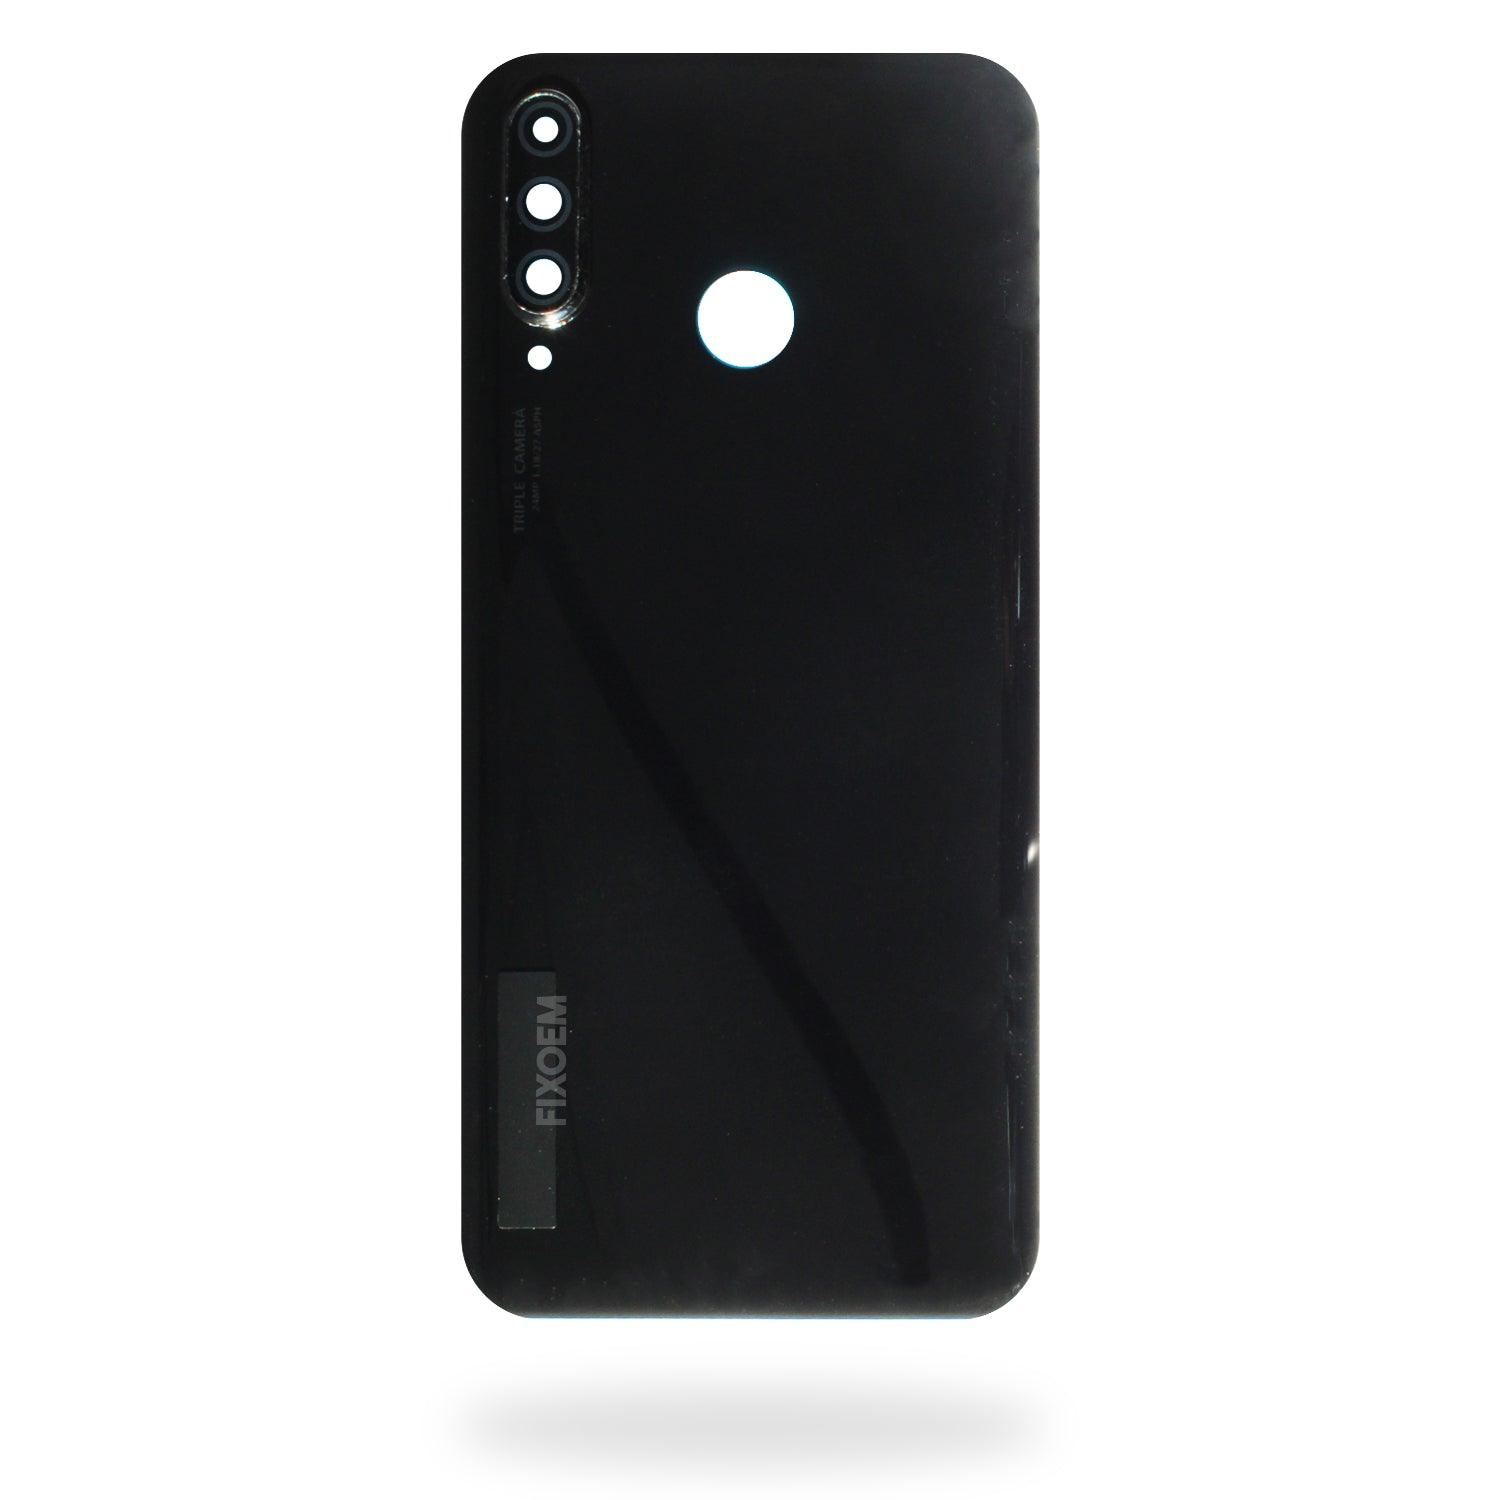 Tapa Trasera Huawei P30 Lite Mar-LX1M a solo $ 90.00 Refaccion y puestos celulares, refurbish y microelectronica.- FixOEM